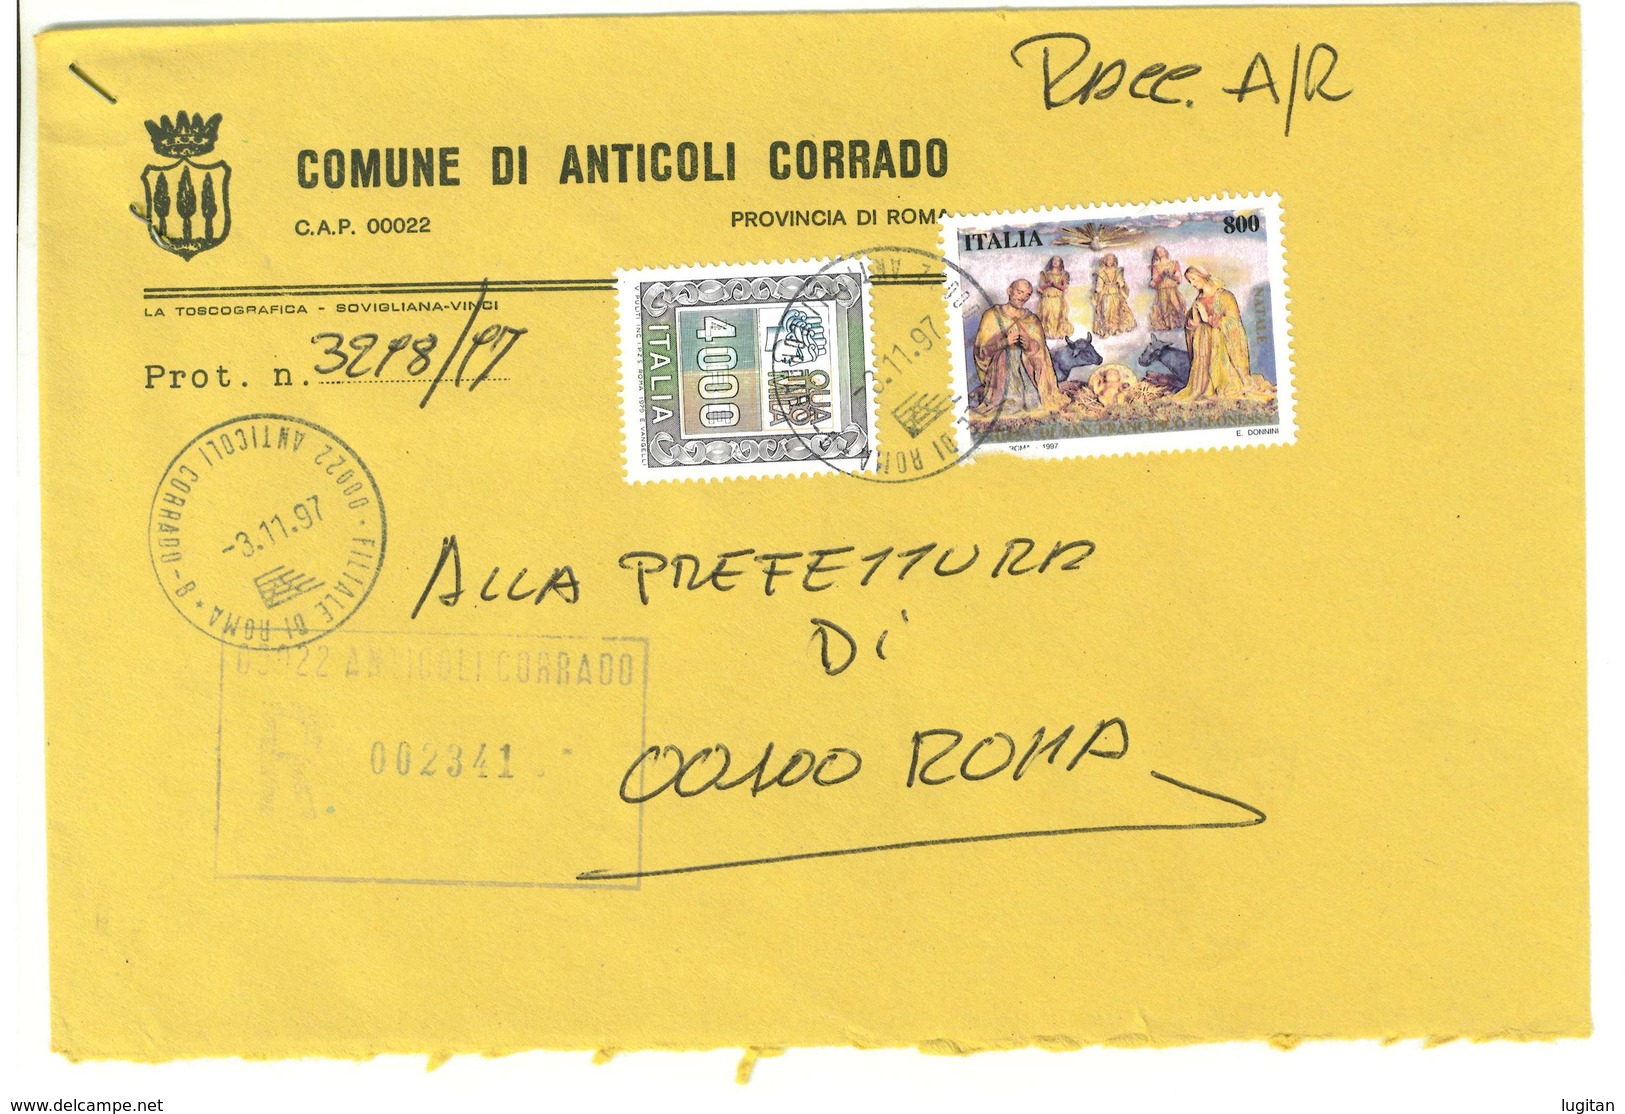 ANTICOLI CORRADO  00022 PROV. RM - ANNO 1997  - R  - TEMATICA COMUNI D'ITALIA - STORIA POSTALE - Macchine Per Obliterare (EMA)